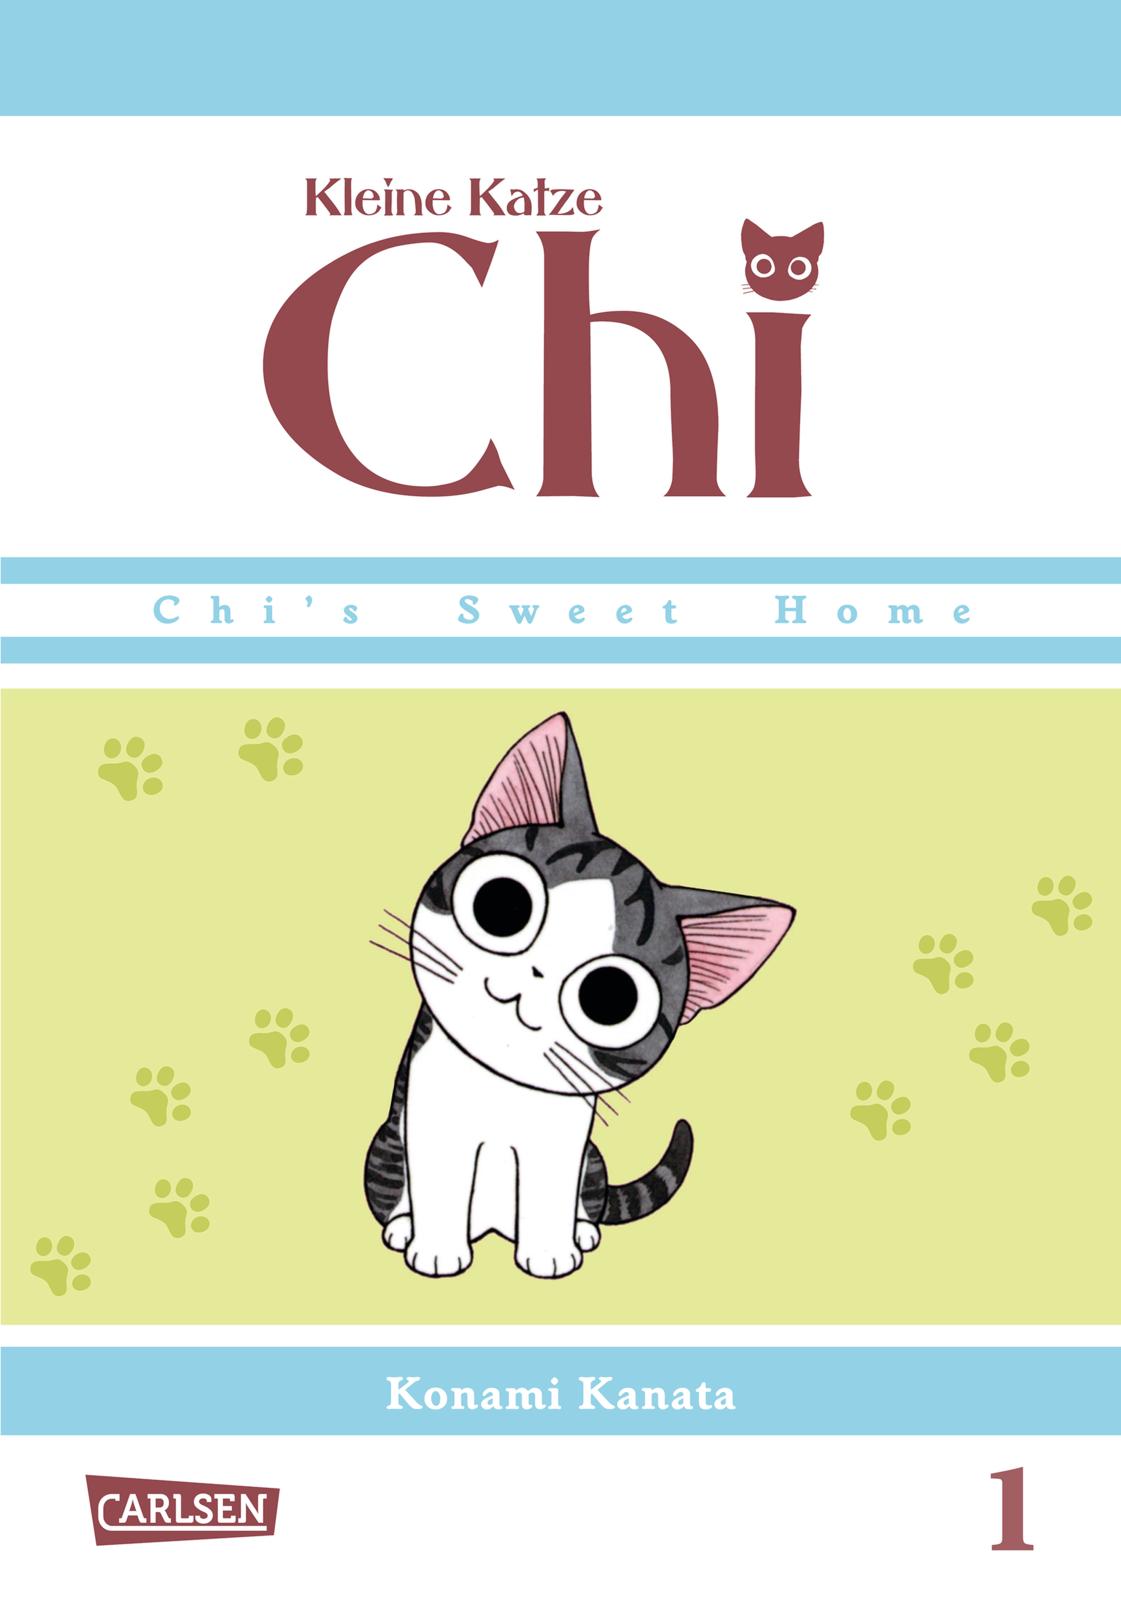 Buchcover "Kleine Katze Chi", Carlsen